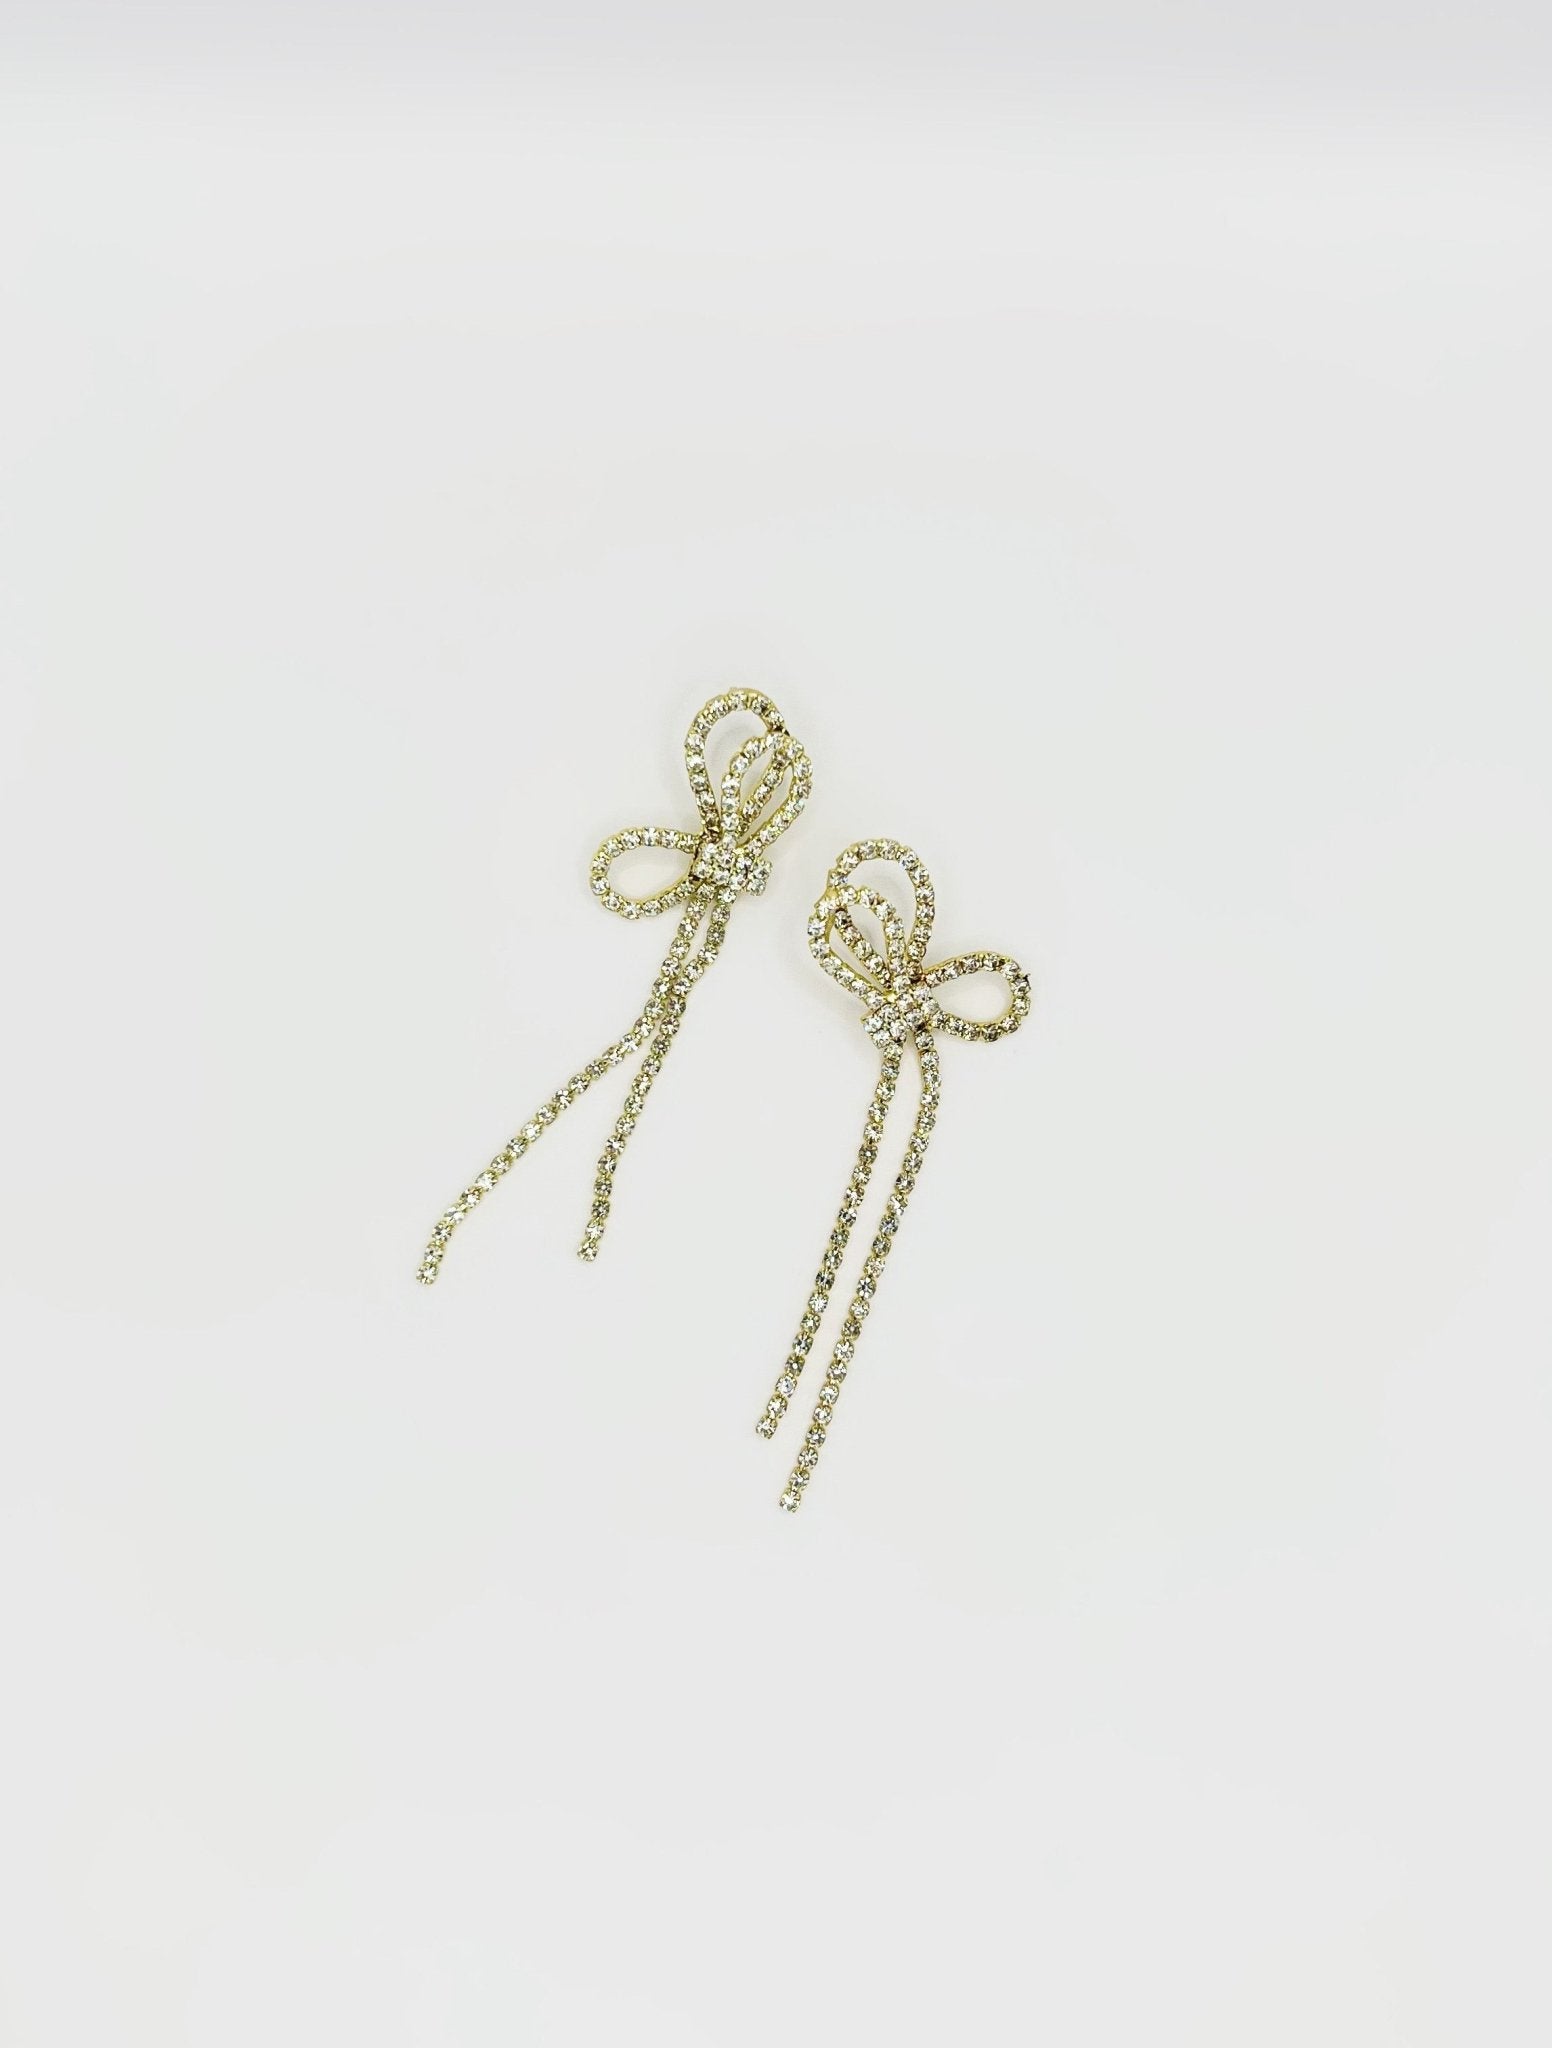 Tilda's Bow Mini Diamond Stud Earrings